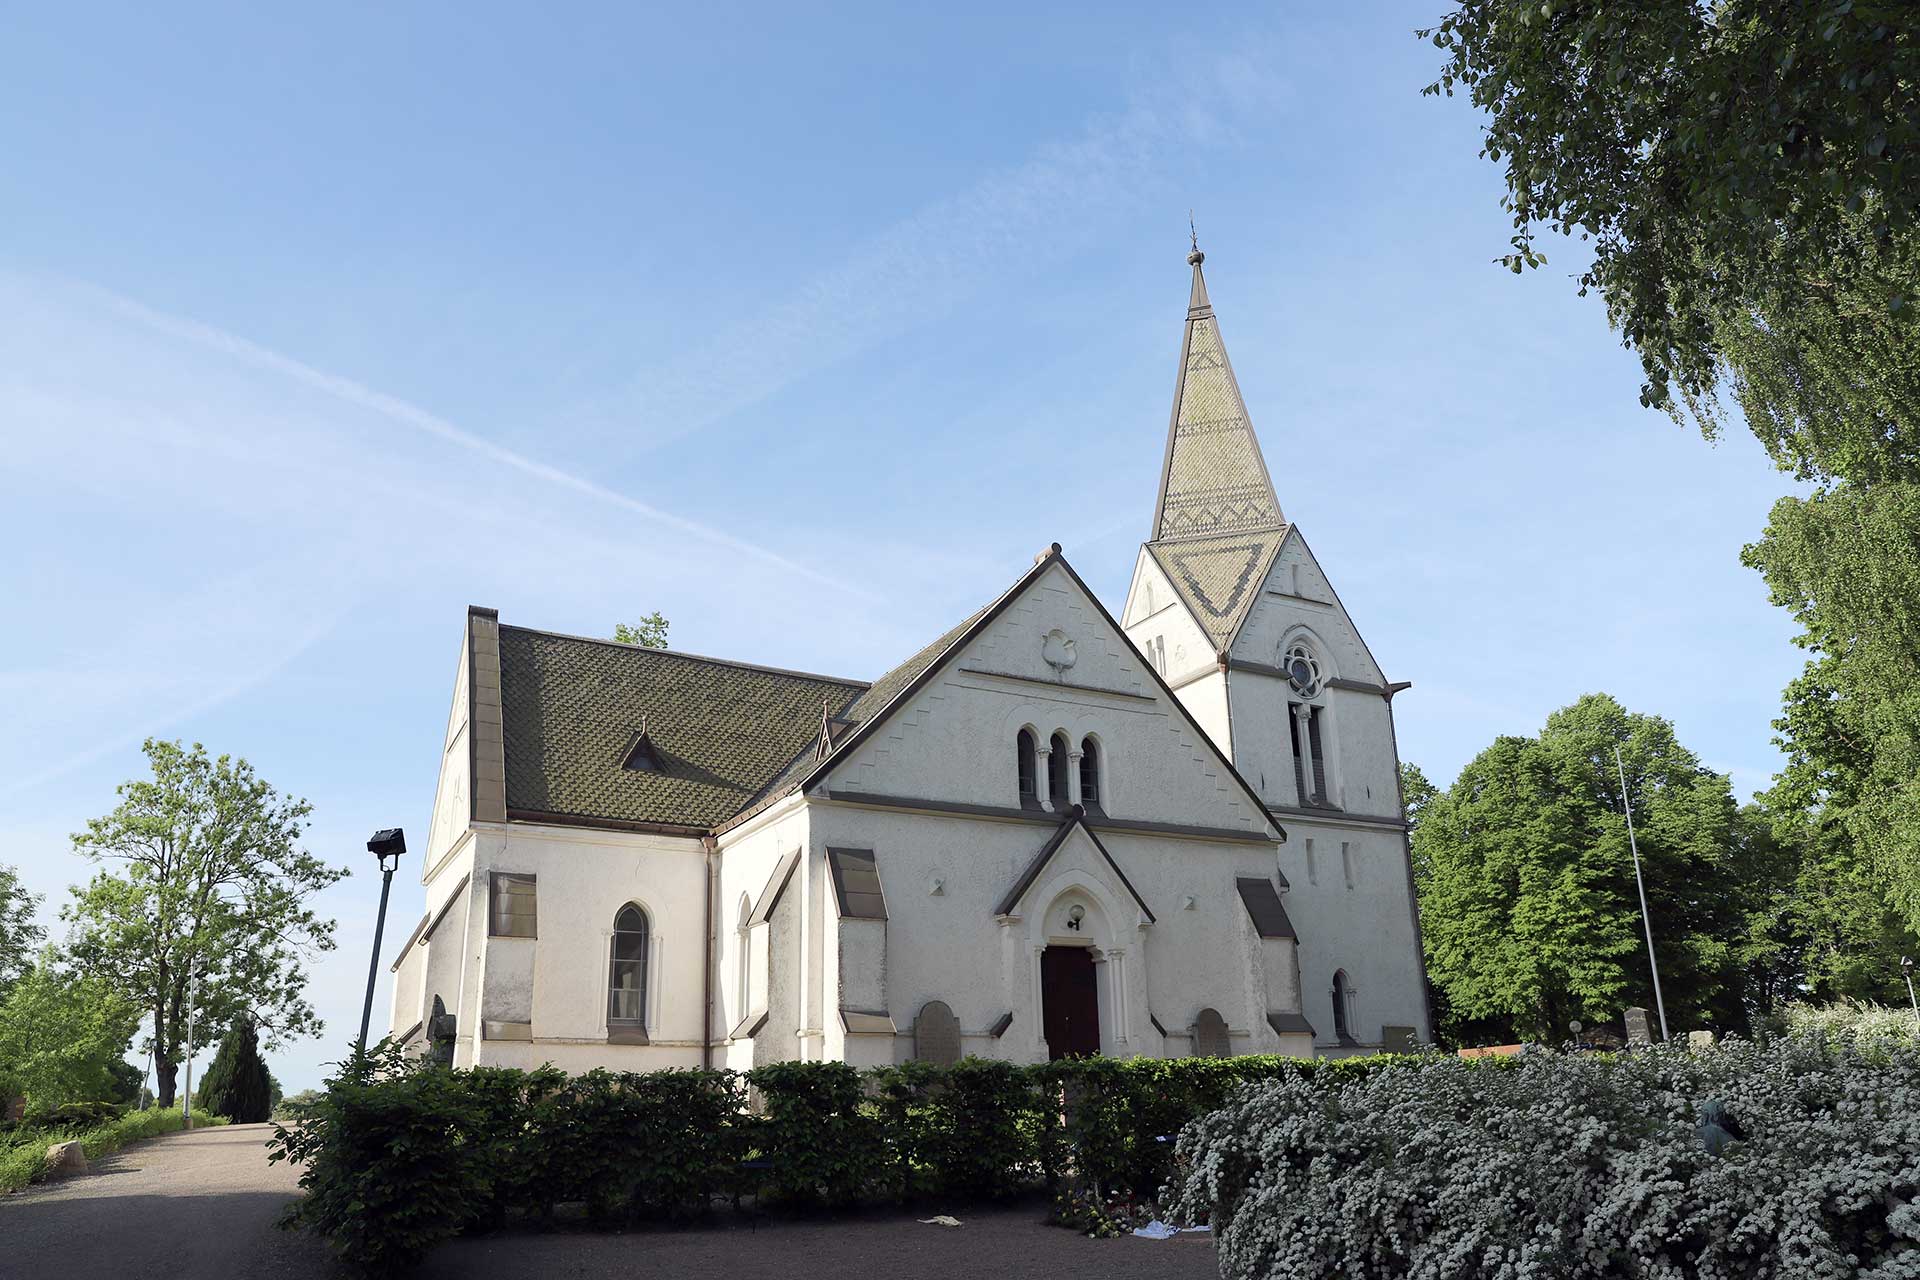 Fosie kyrka är en vitputsad kyrka i nygotisk stil.